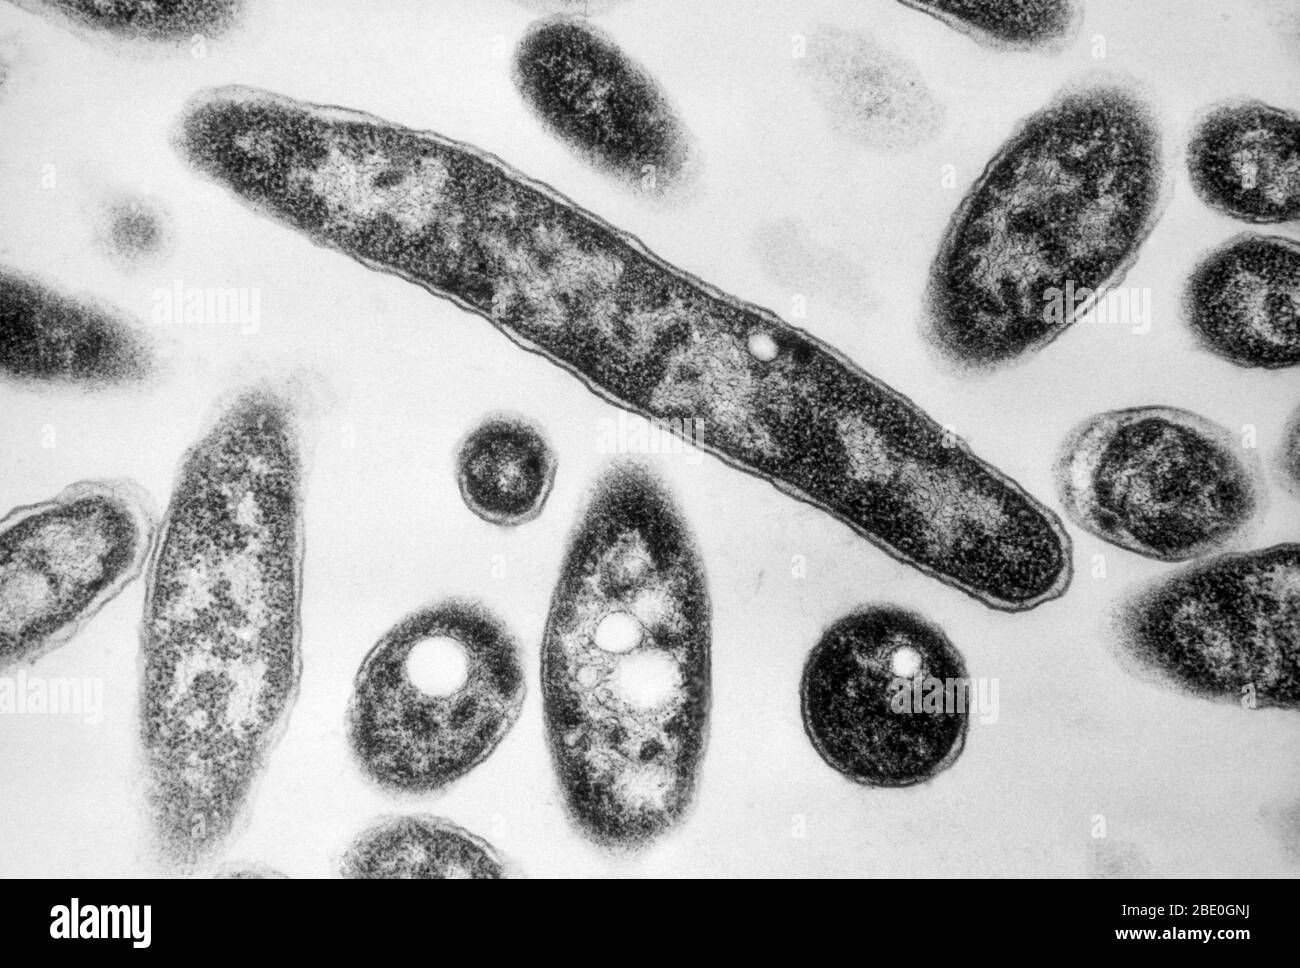 Transmission Electron Micrograph (TEM) zeigt Bakterien der Gattung Legionella, mit sichtbaren Vakuolen. Diese pathogenen, gramnegativen Bakterien verursachen Legionellose oder Legionärsdesase. Bakterien auf bakteriologischem Medium. Vergrößerung: 90.000-fach bei 35mm. Stockfoto